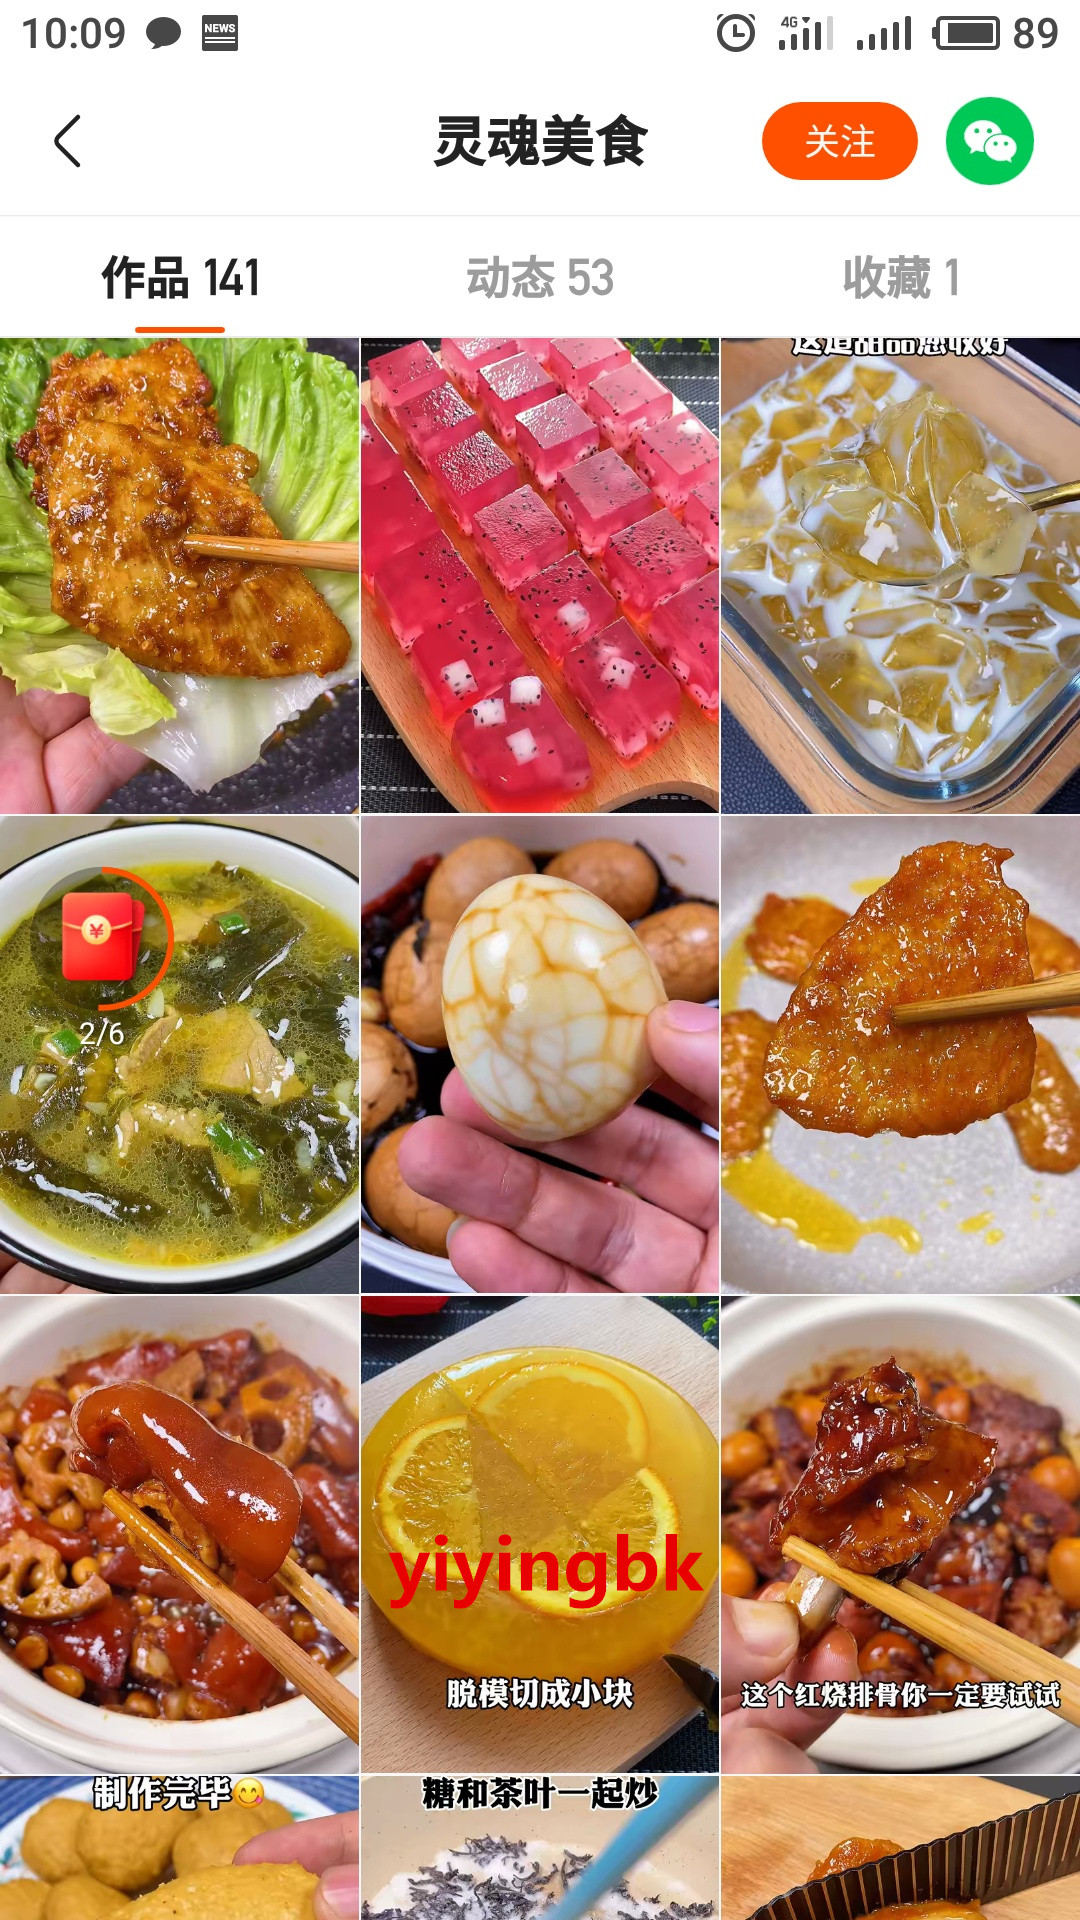 学习做早餐美食的视频教程，看视频还能领红包。www.yiyingbk.com